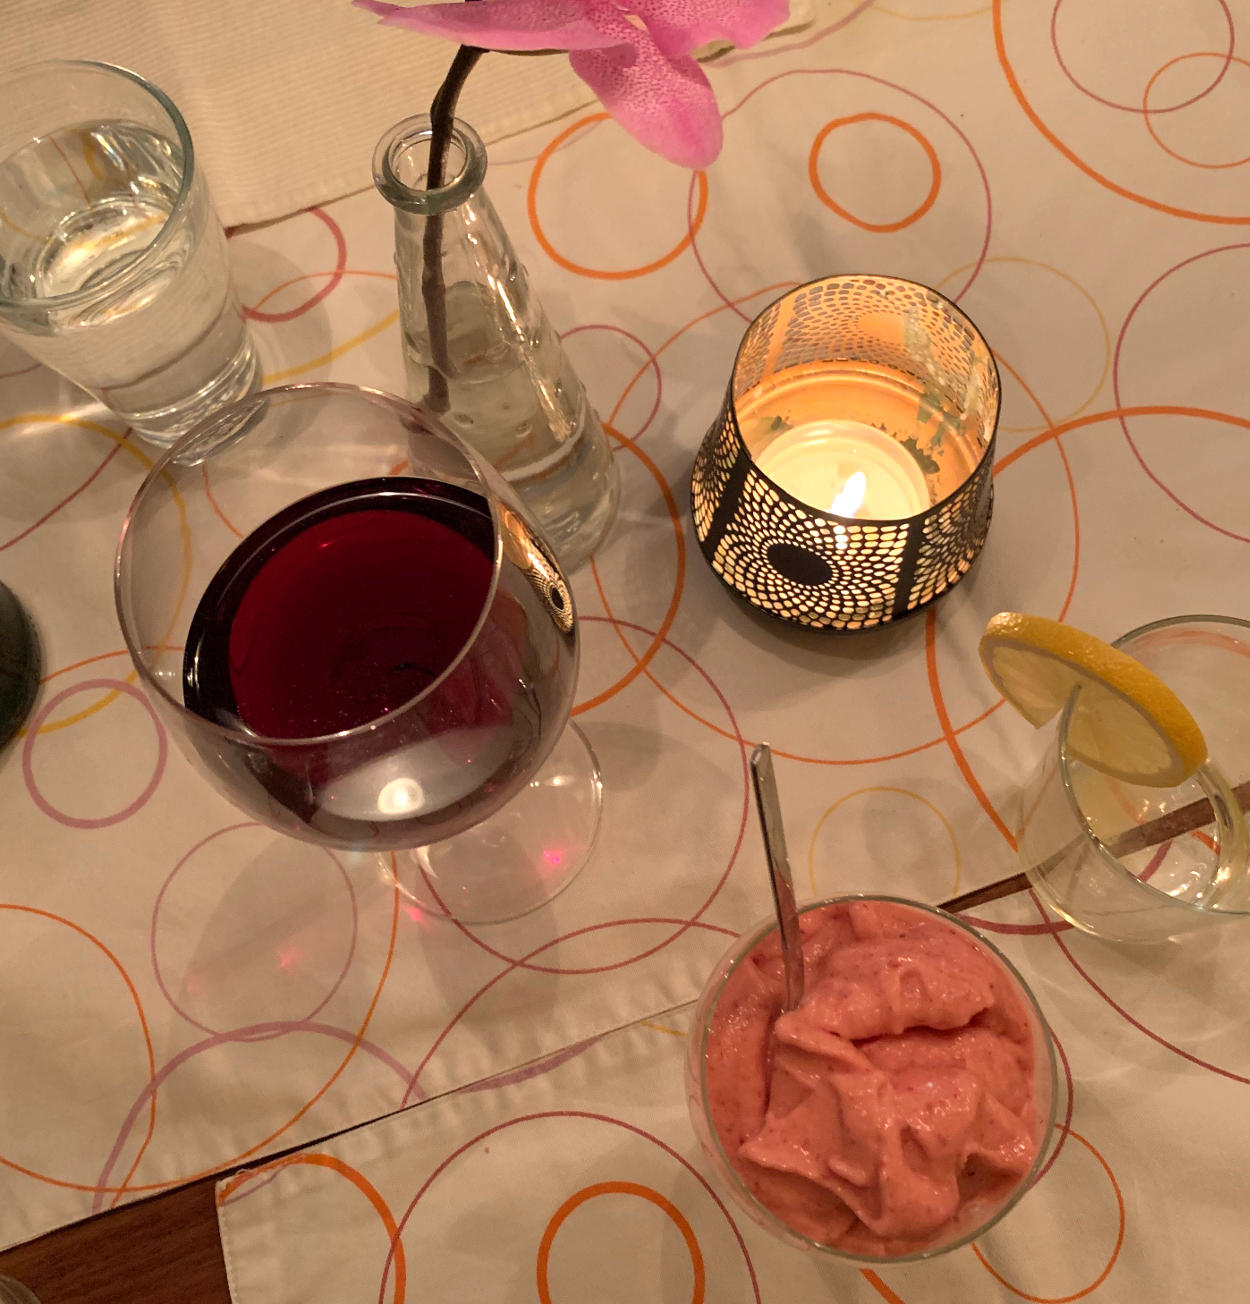 Ein Glas Rotwein, ein leeres Glas mit Zitronenscheibe, ein Glas Wasser, ein Glas mit Erdbeereis. 